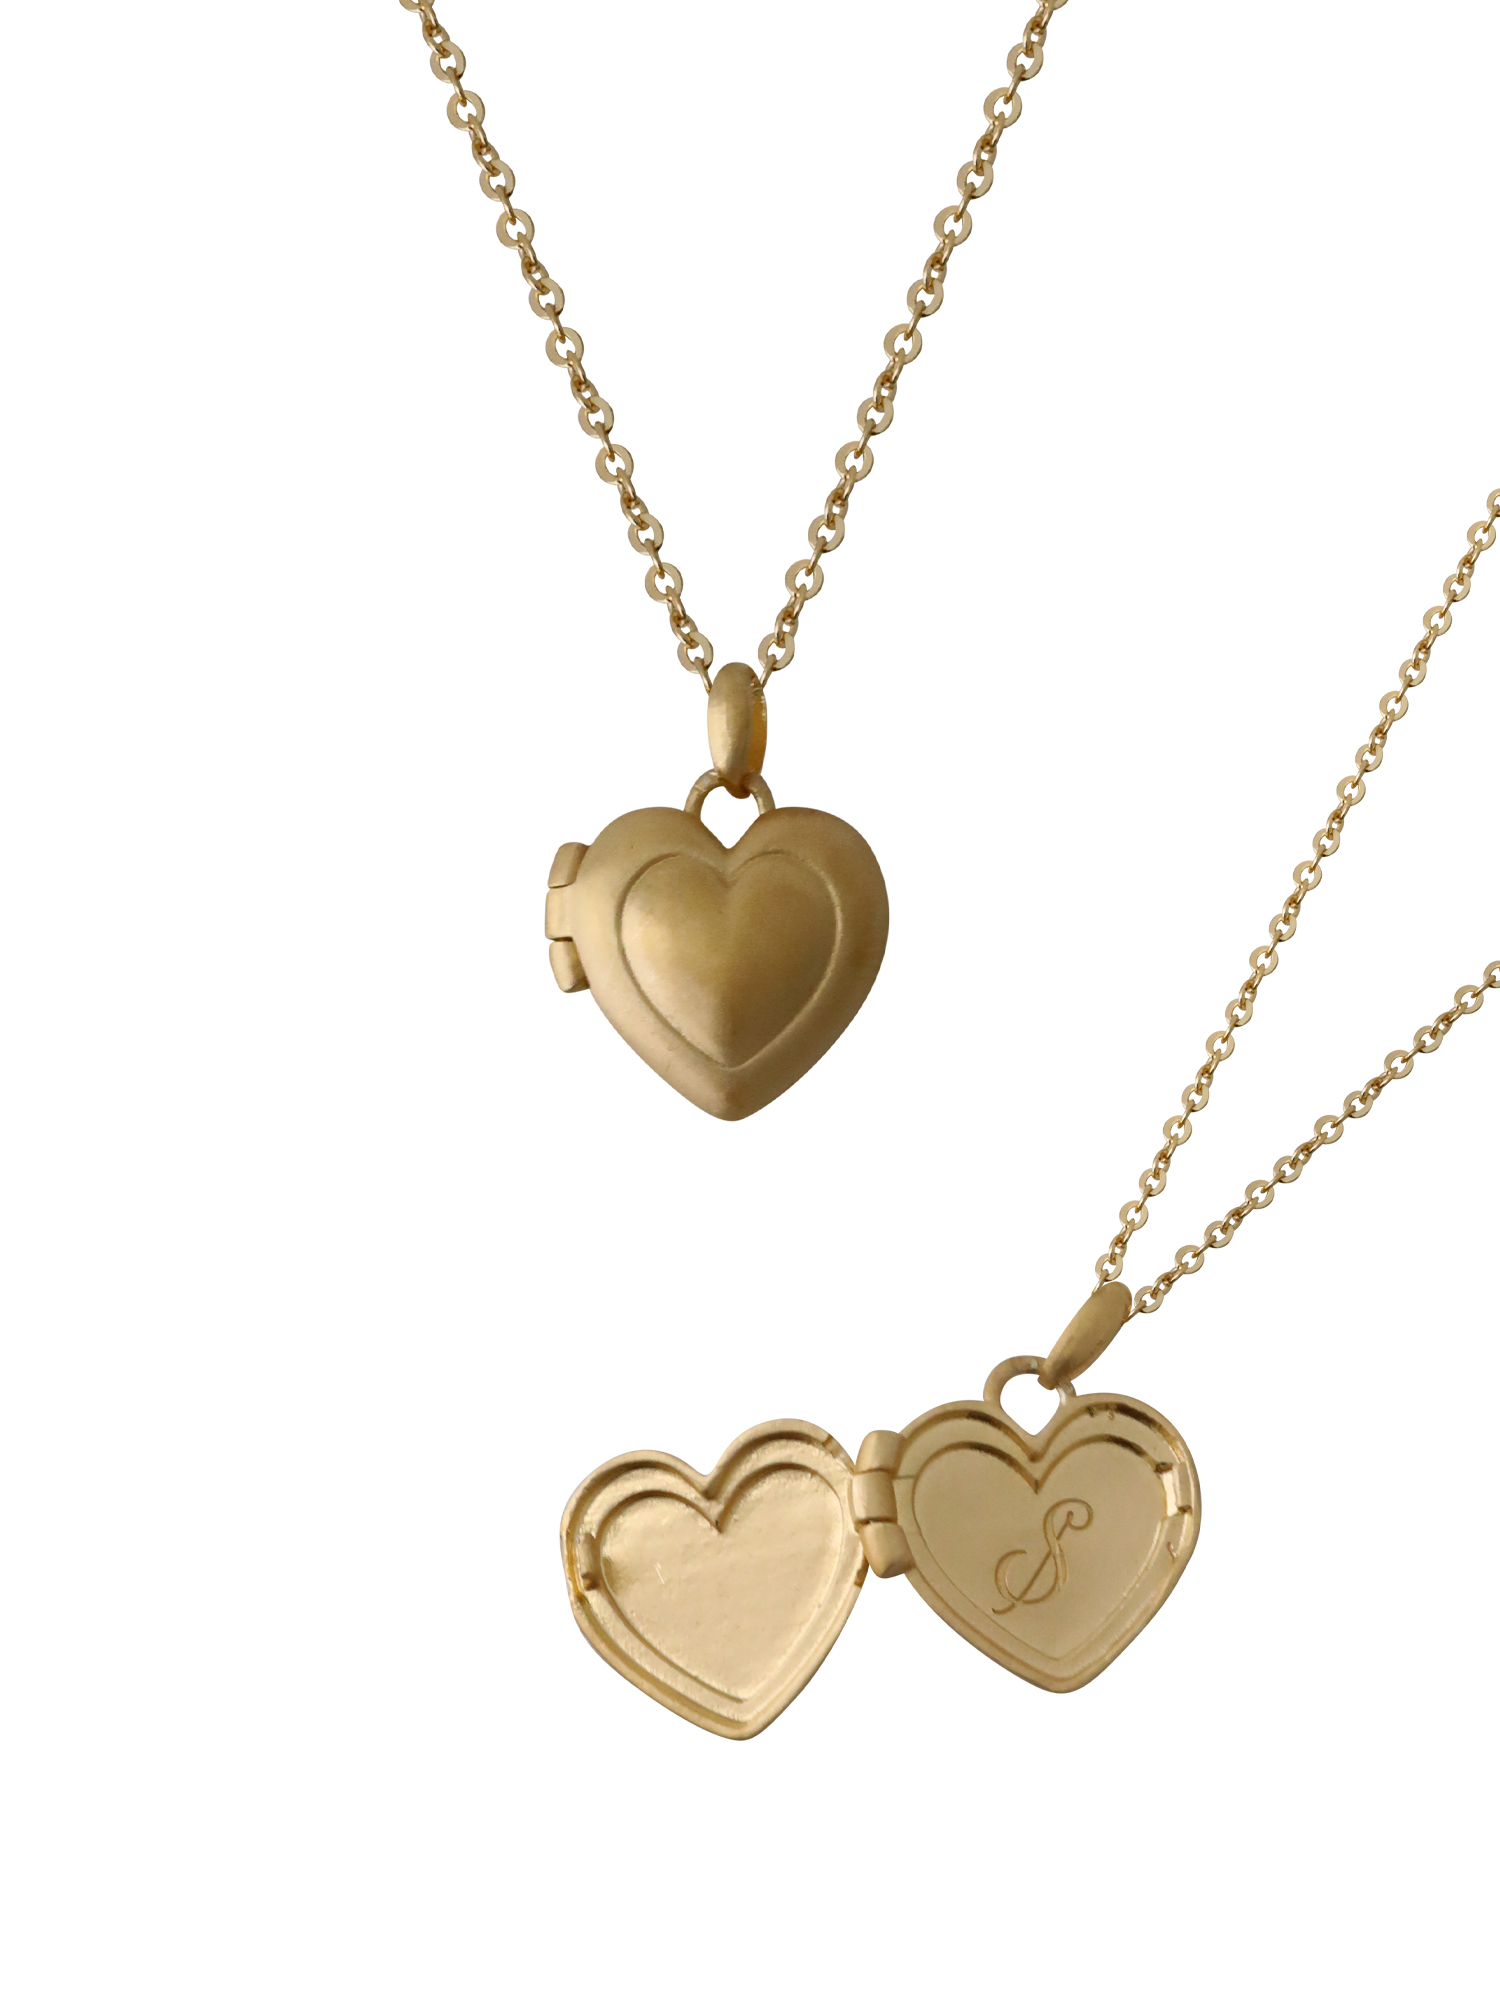 Love myself Necklace ( Gold Vermeil / Matte )